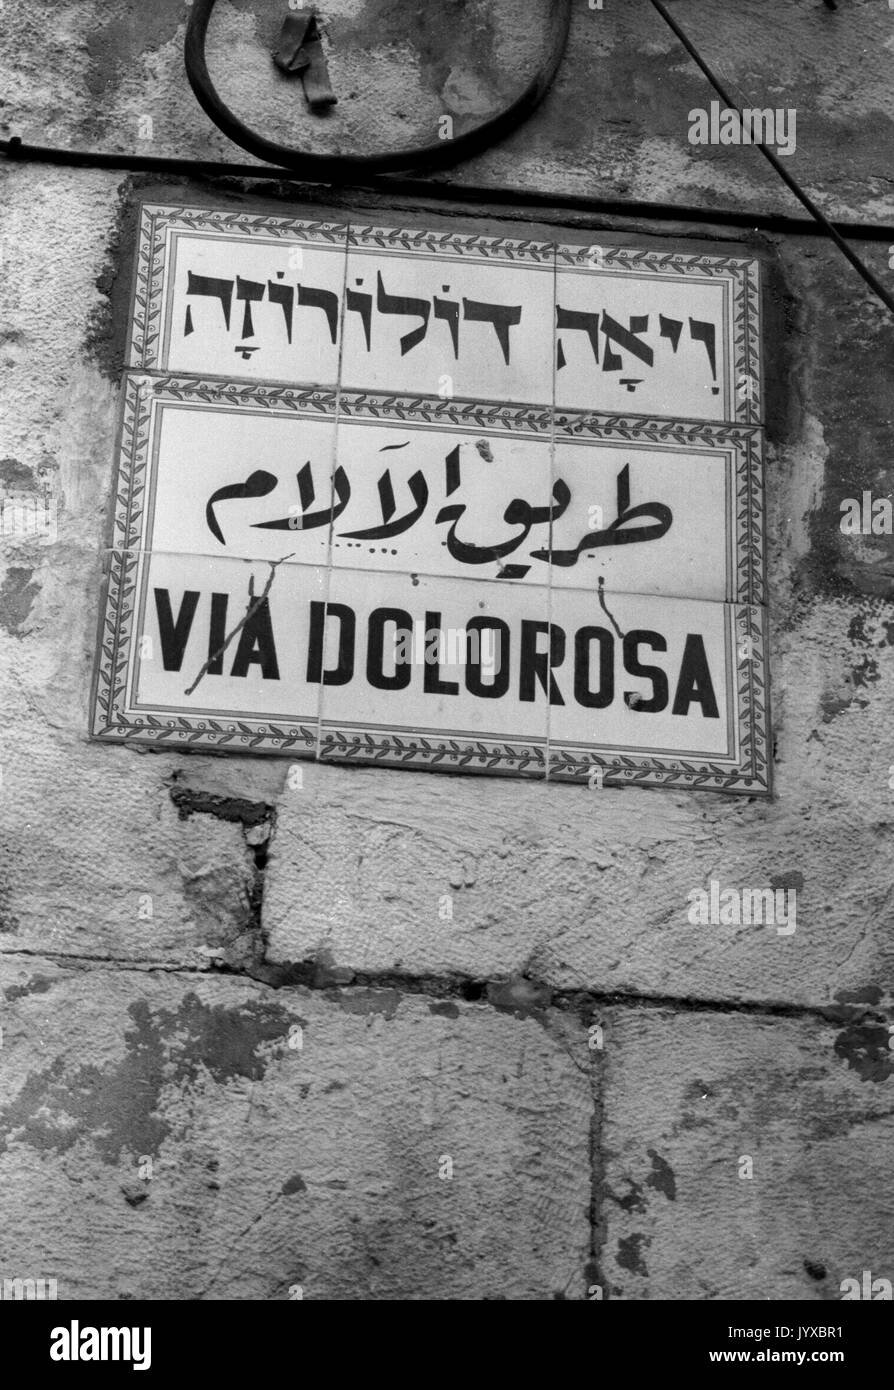 Via Dolorosa in Jerusalem 1987 April 03 biblischen Umgebungen glaubte, den Weg zu Jesus auf dem Weg zur Kreuzigung ging. Stockfoto